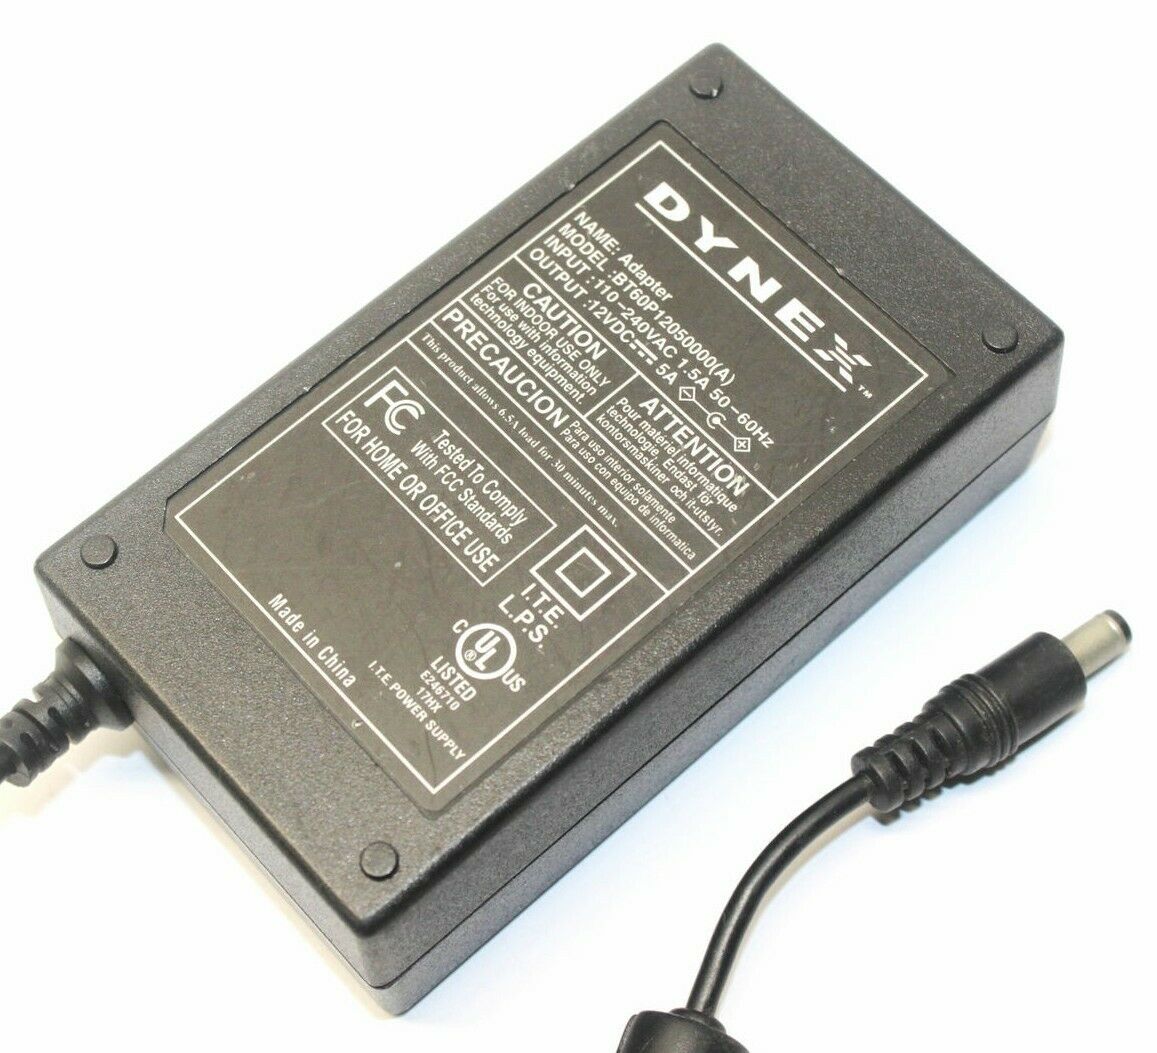 Genuine Dynex BT60P12050000(A) ITE Power Supply AC Adapter Output DC 12V 5A Model Number: BT60P12050000(A) output:12V - Click Image to Close